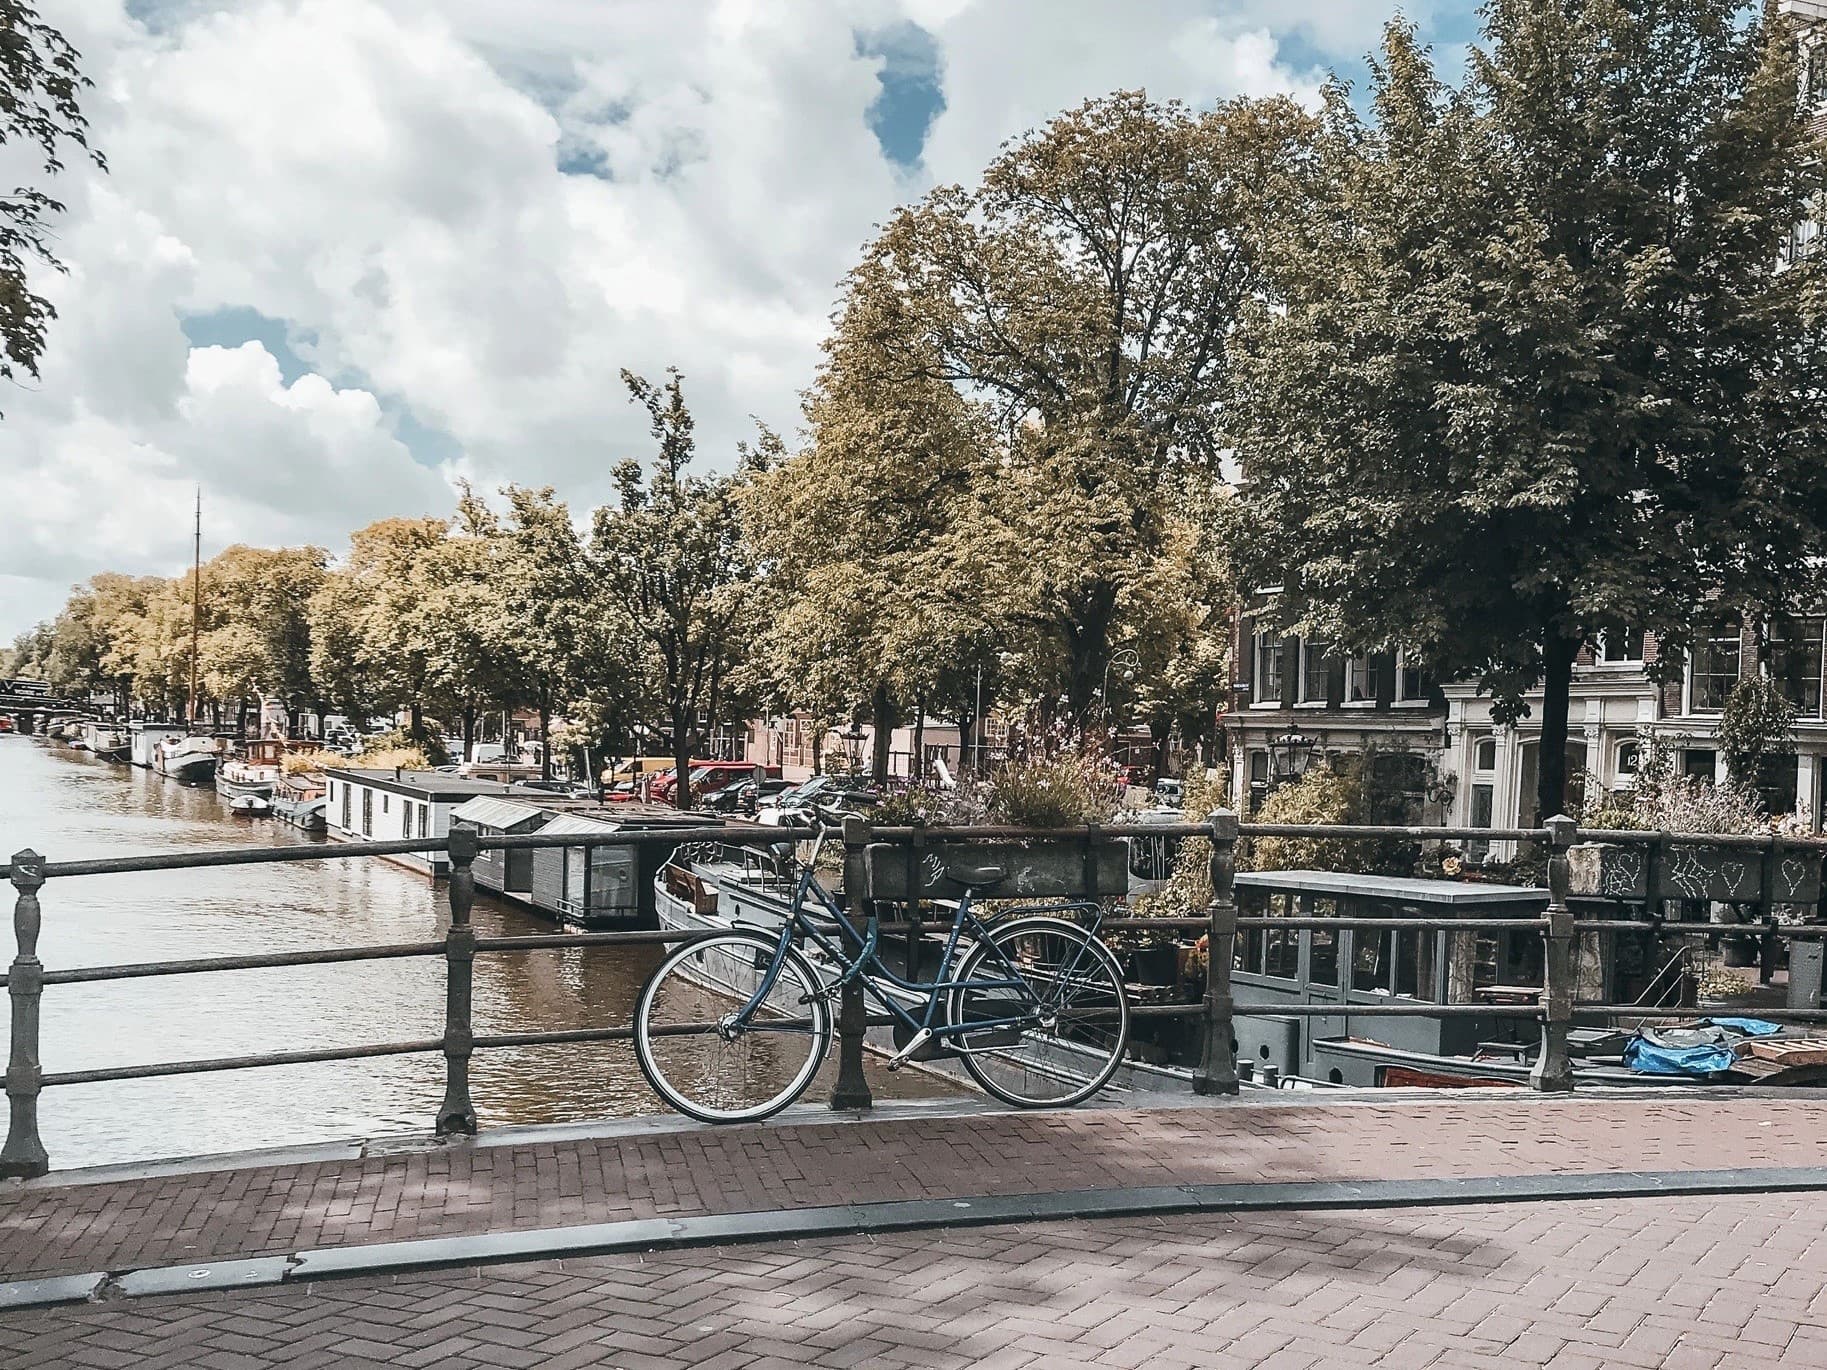 Vegane Städte: Blick von einer Brücke in Amsterdam auf eine Gracht, auf der Brücke ein Fahrrad.